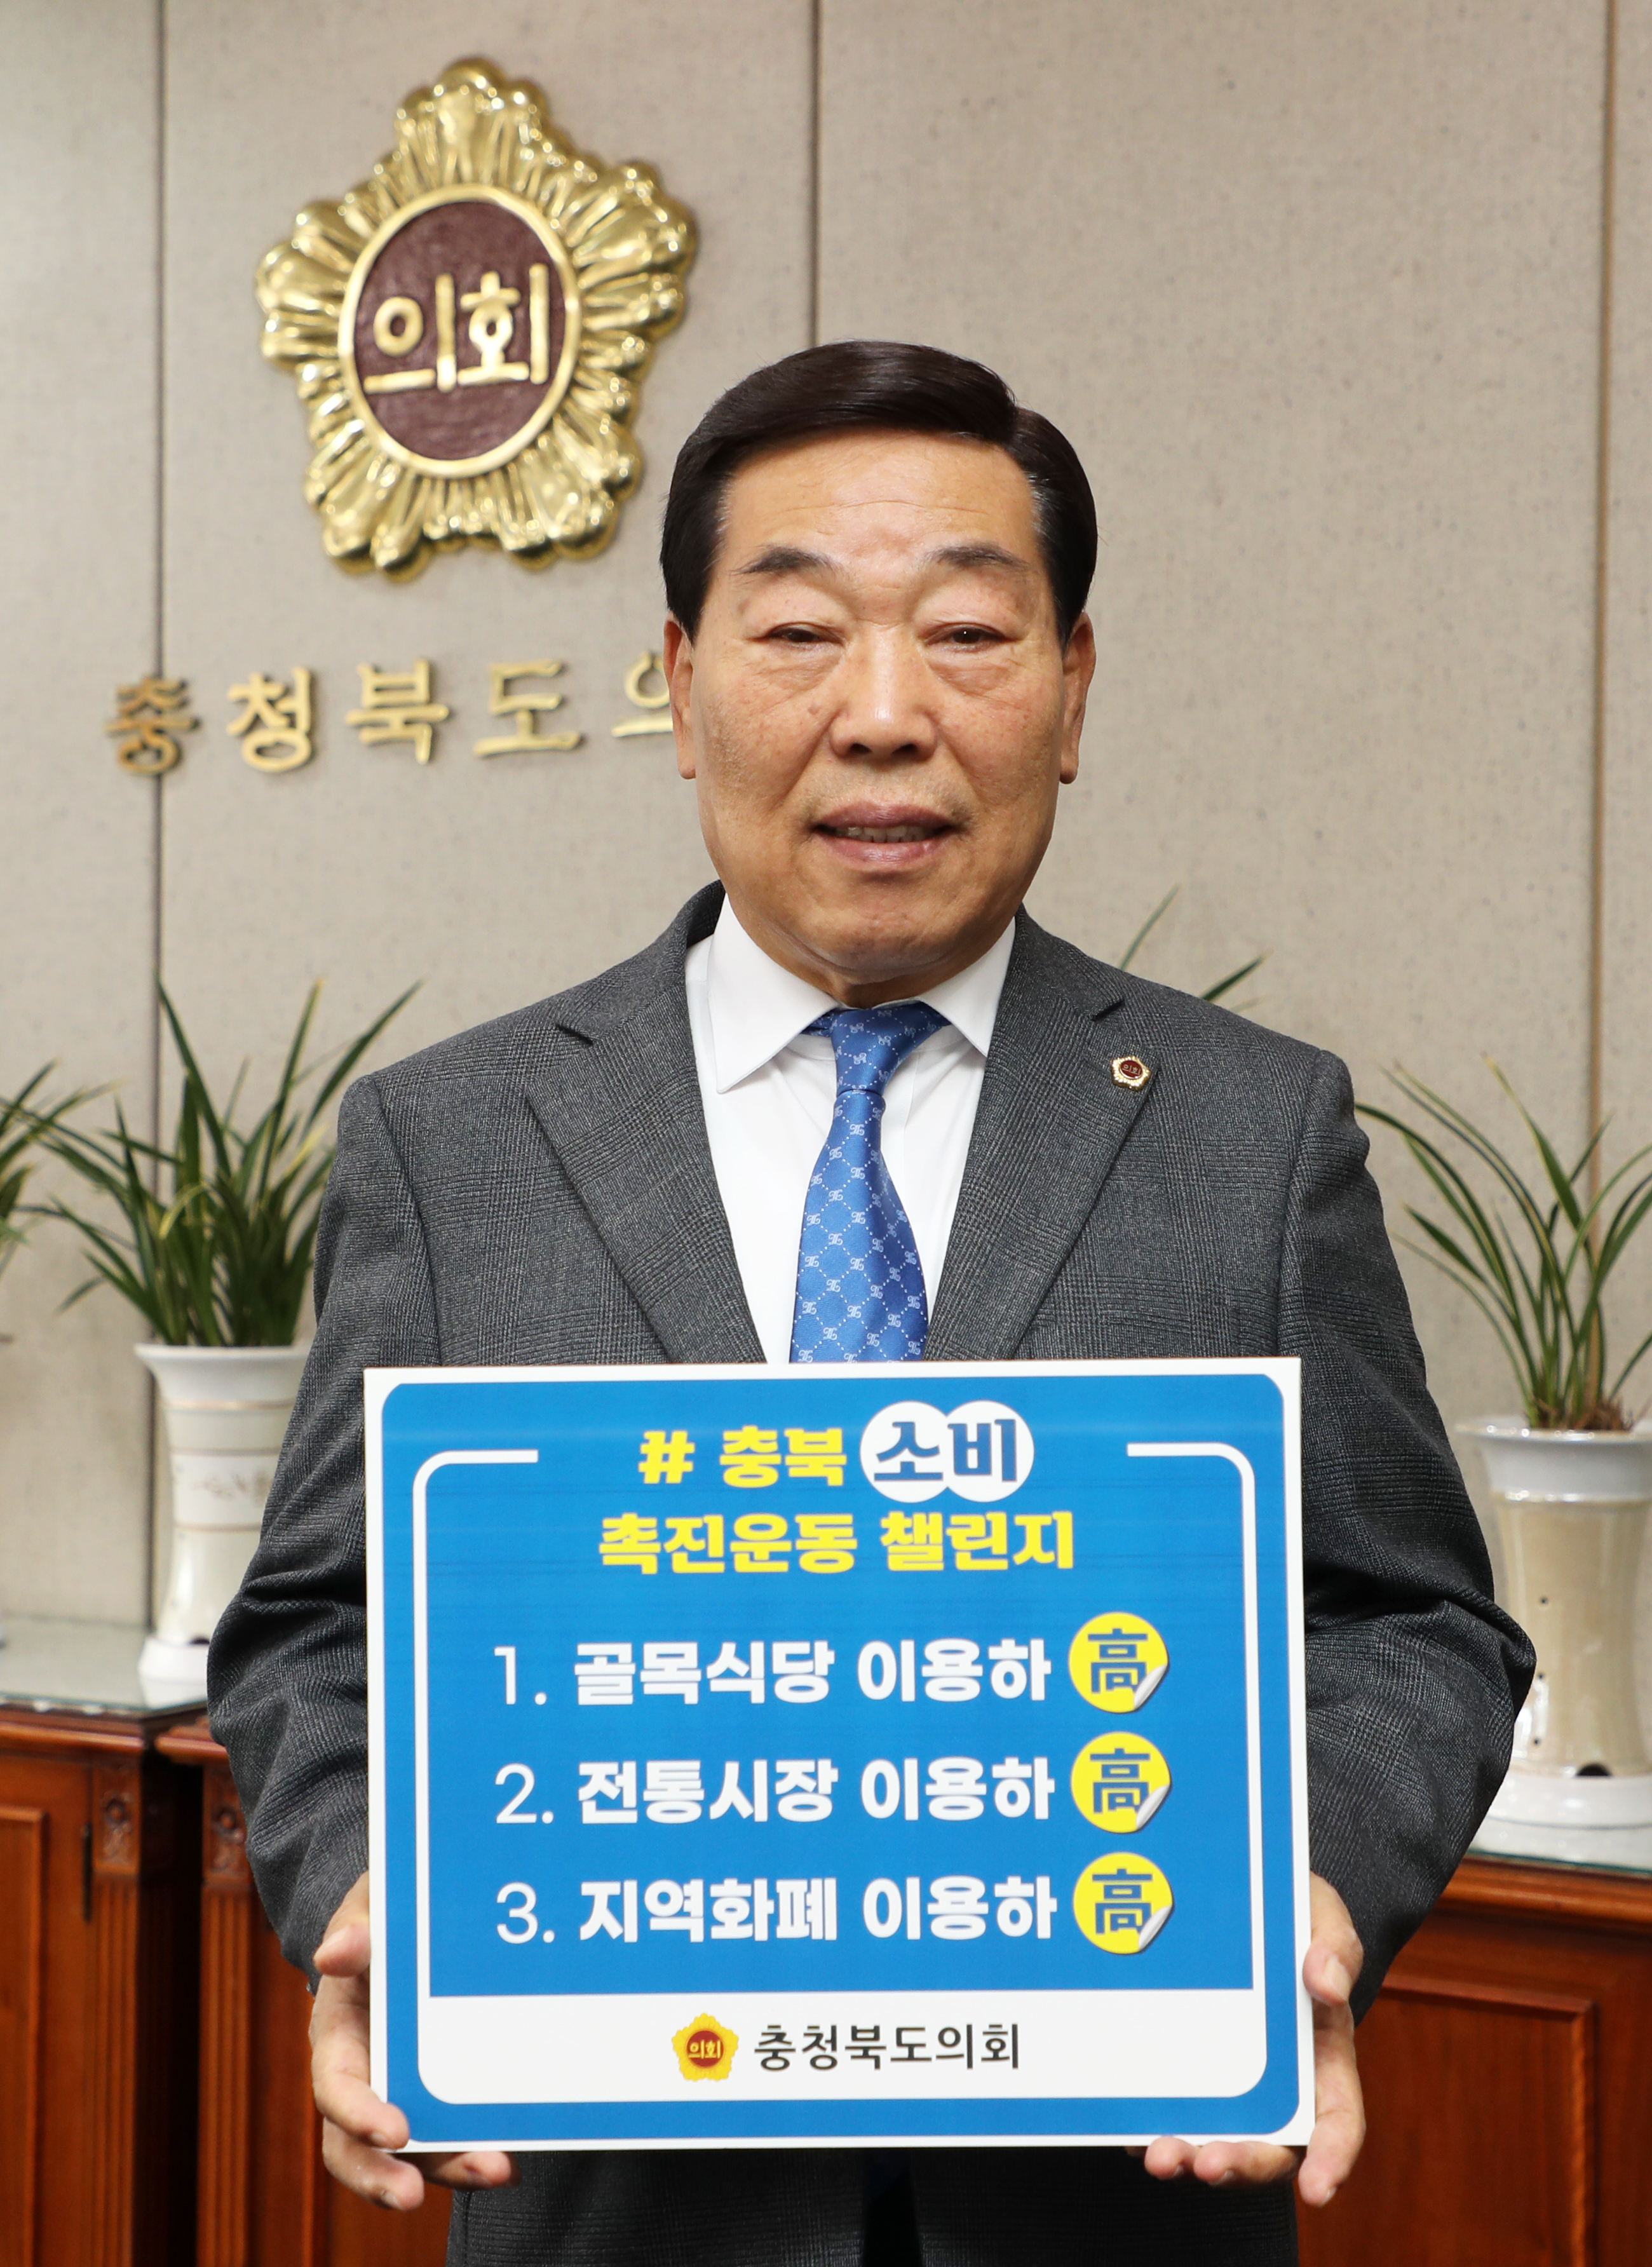  박문희 의장,“충북 소비촉진 운동”챌린지 참여 - 1